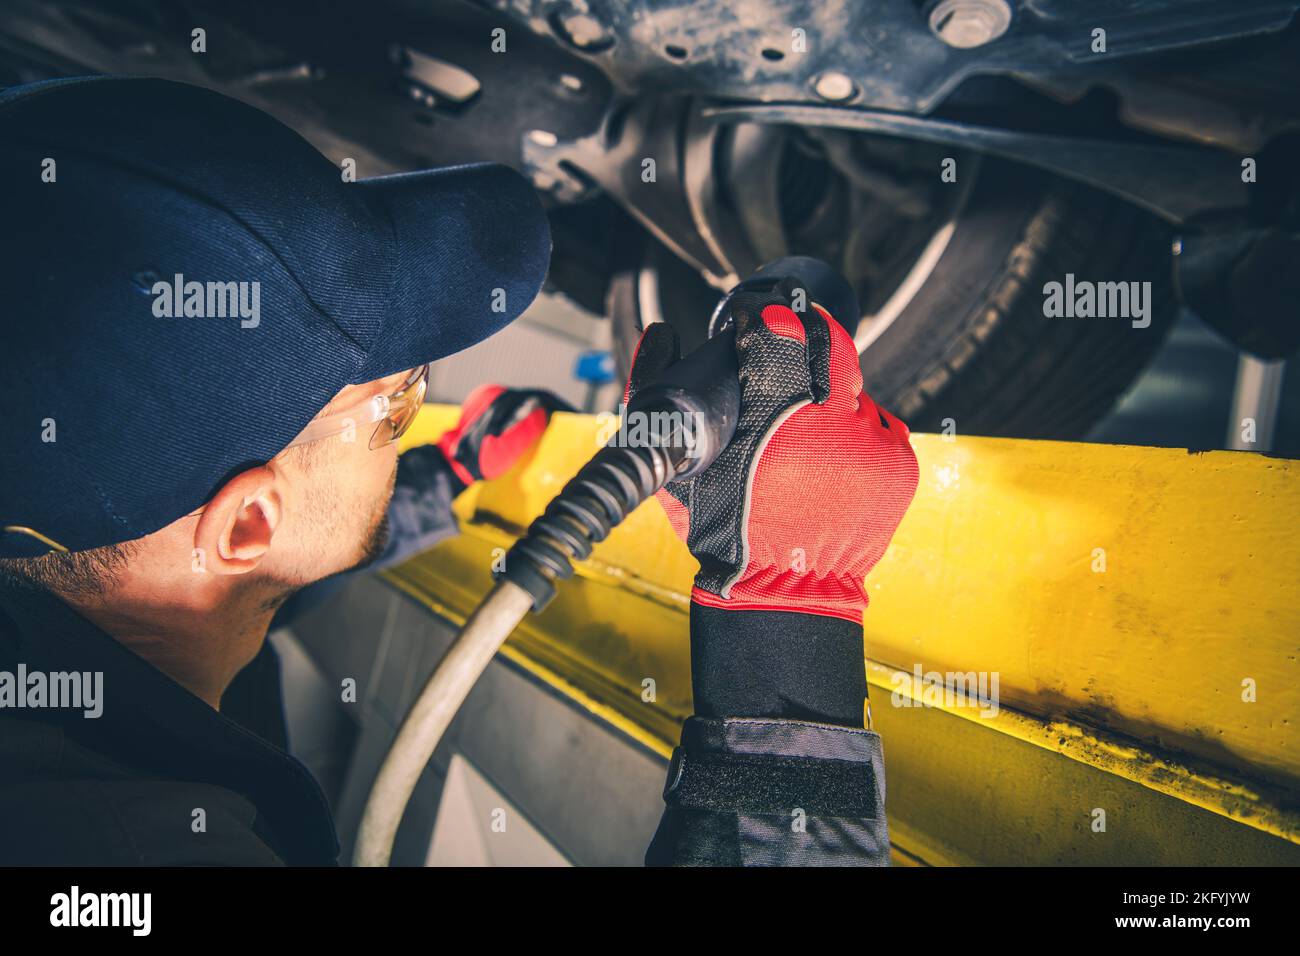 Controllo meccanico professionale del carro del veicolo mediante una torcia elettrica durante l'ispezione programmata del veicolo. Tema di manutenzione dell'automobile. Foto Stock